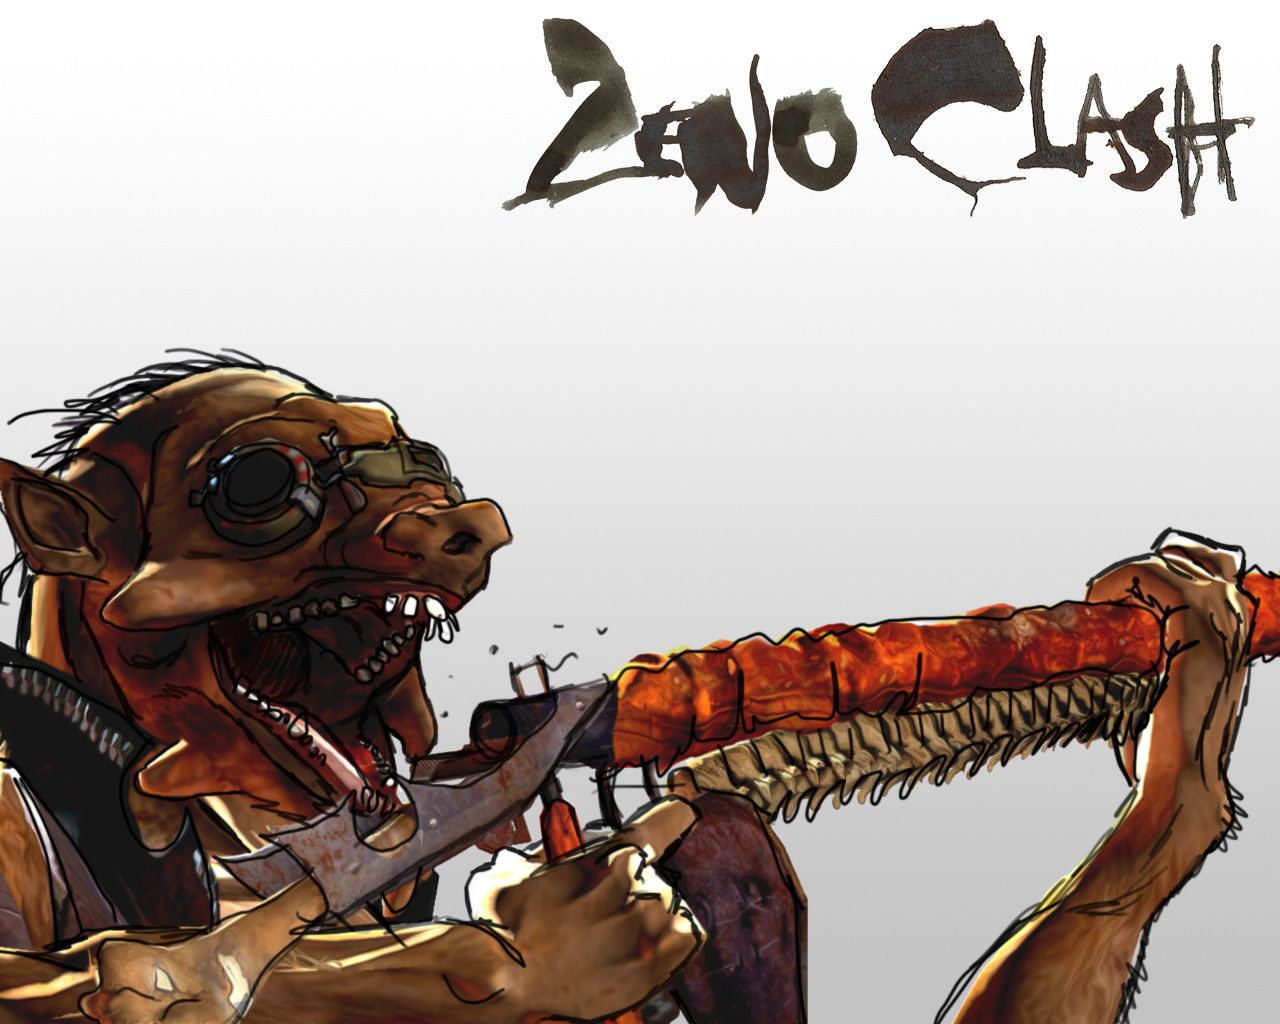 Zenoclash et ses punks mutants primitifs